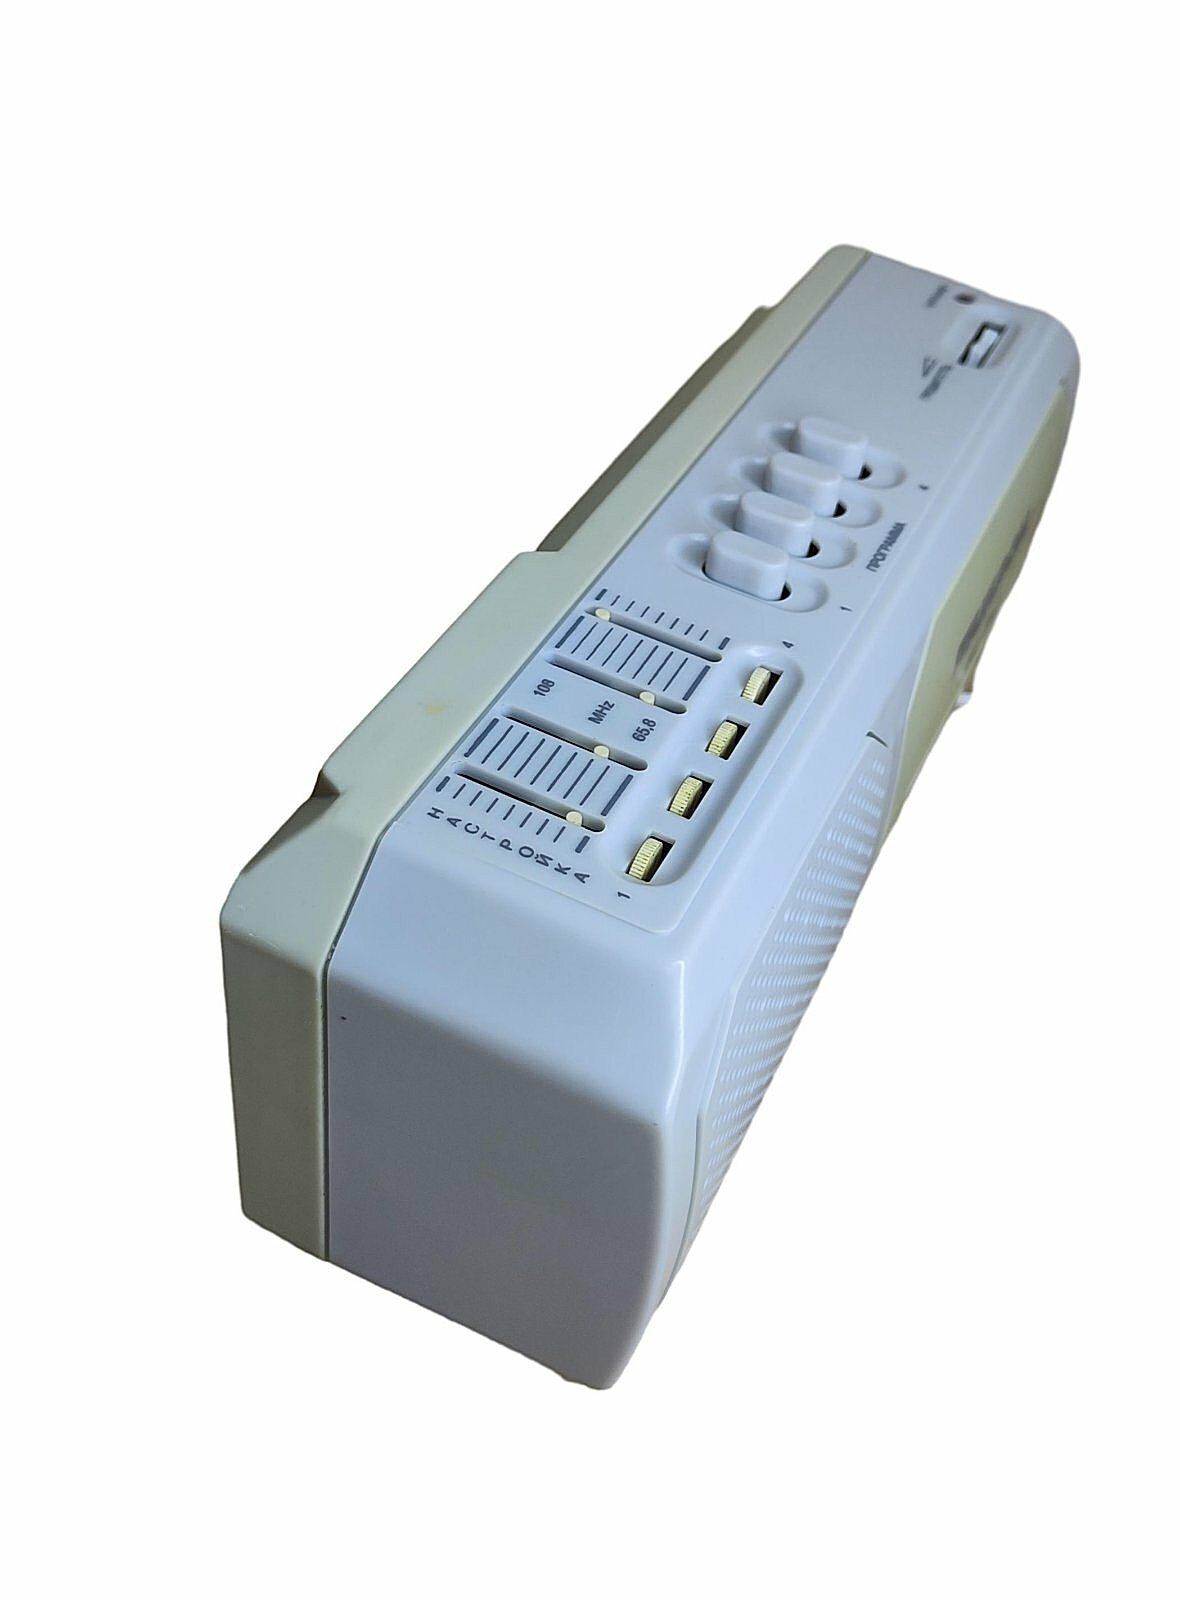 Радиоприёмник микрон РП-2043 220 Вольт/ УКВ FM диапозоны/4 фиксированные настройки радиостанций